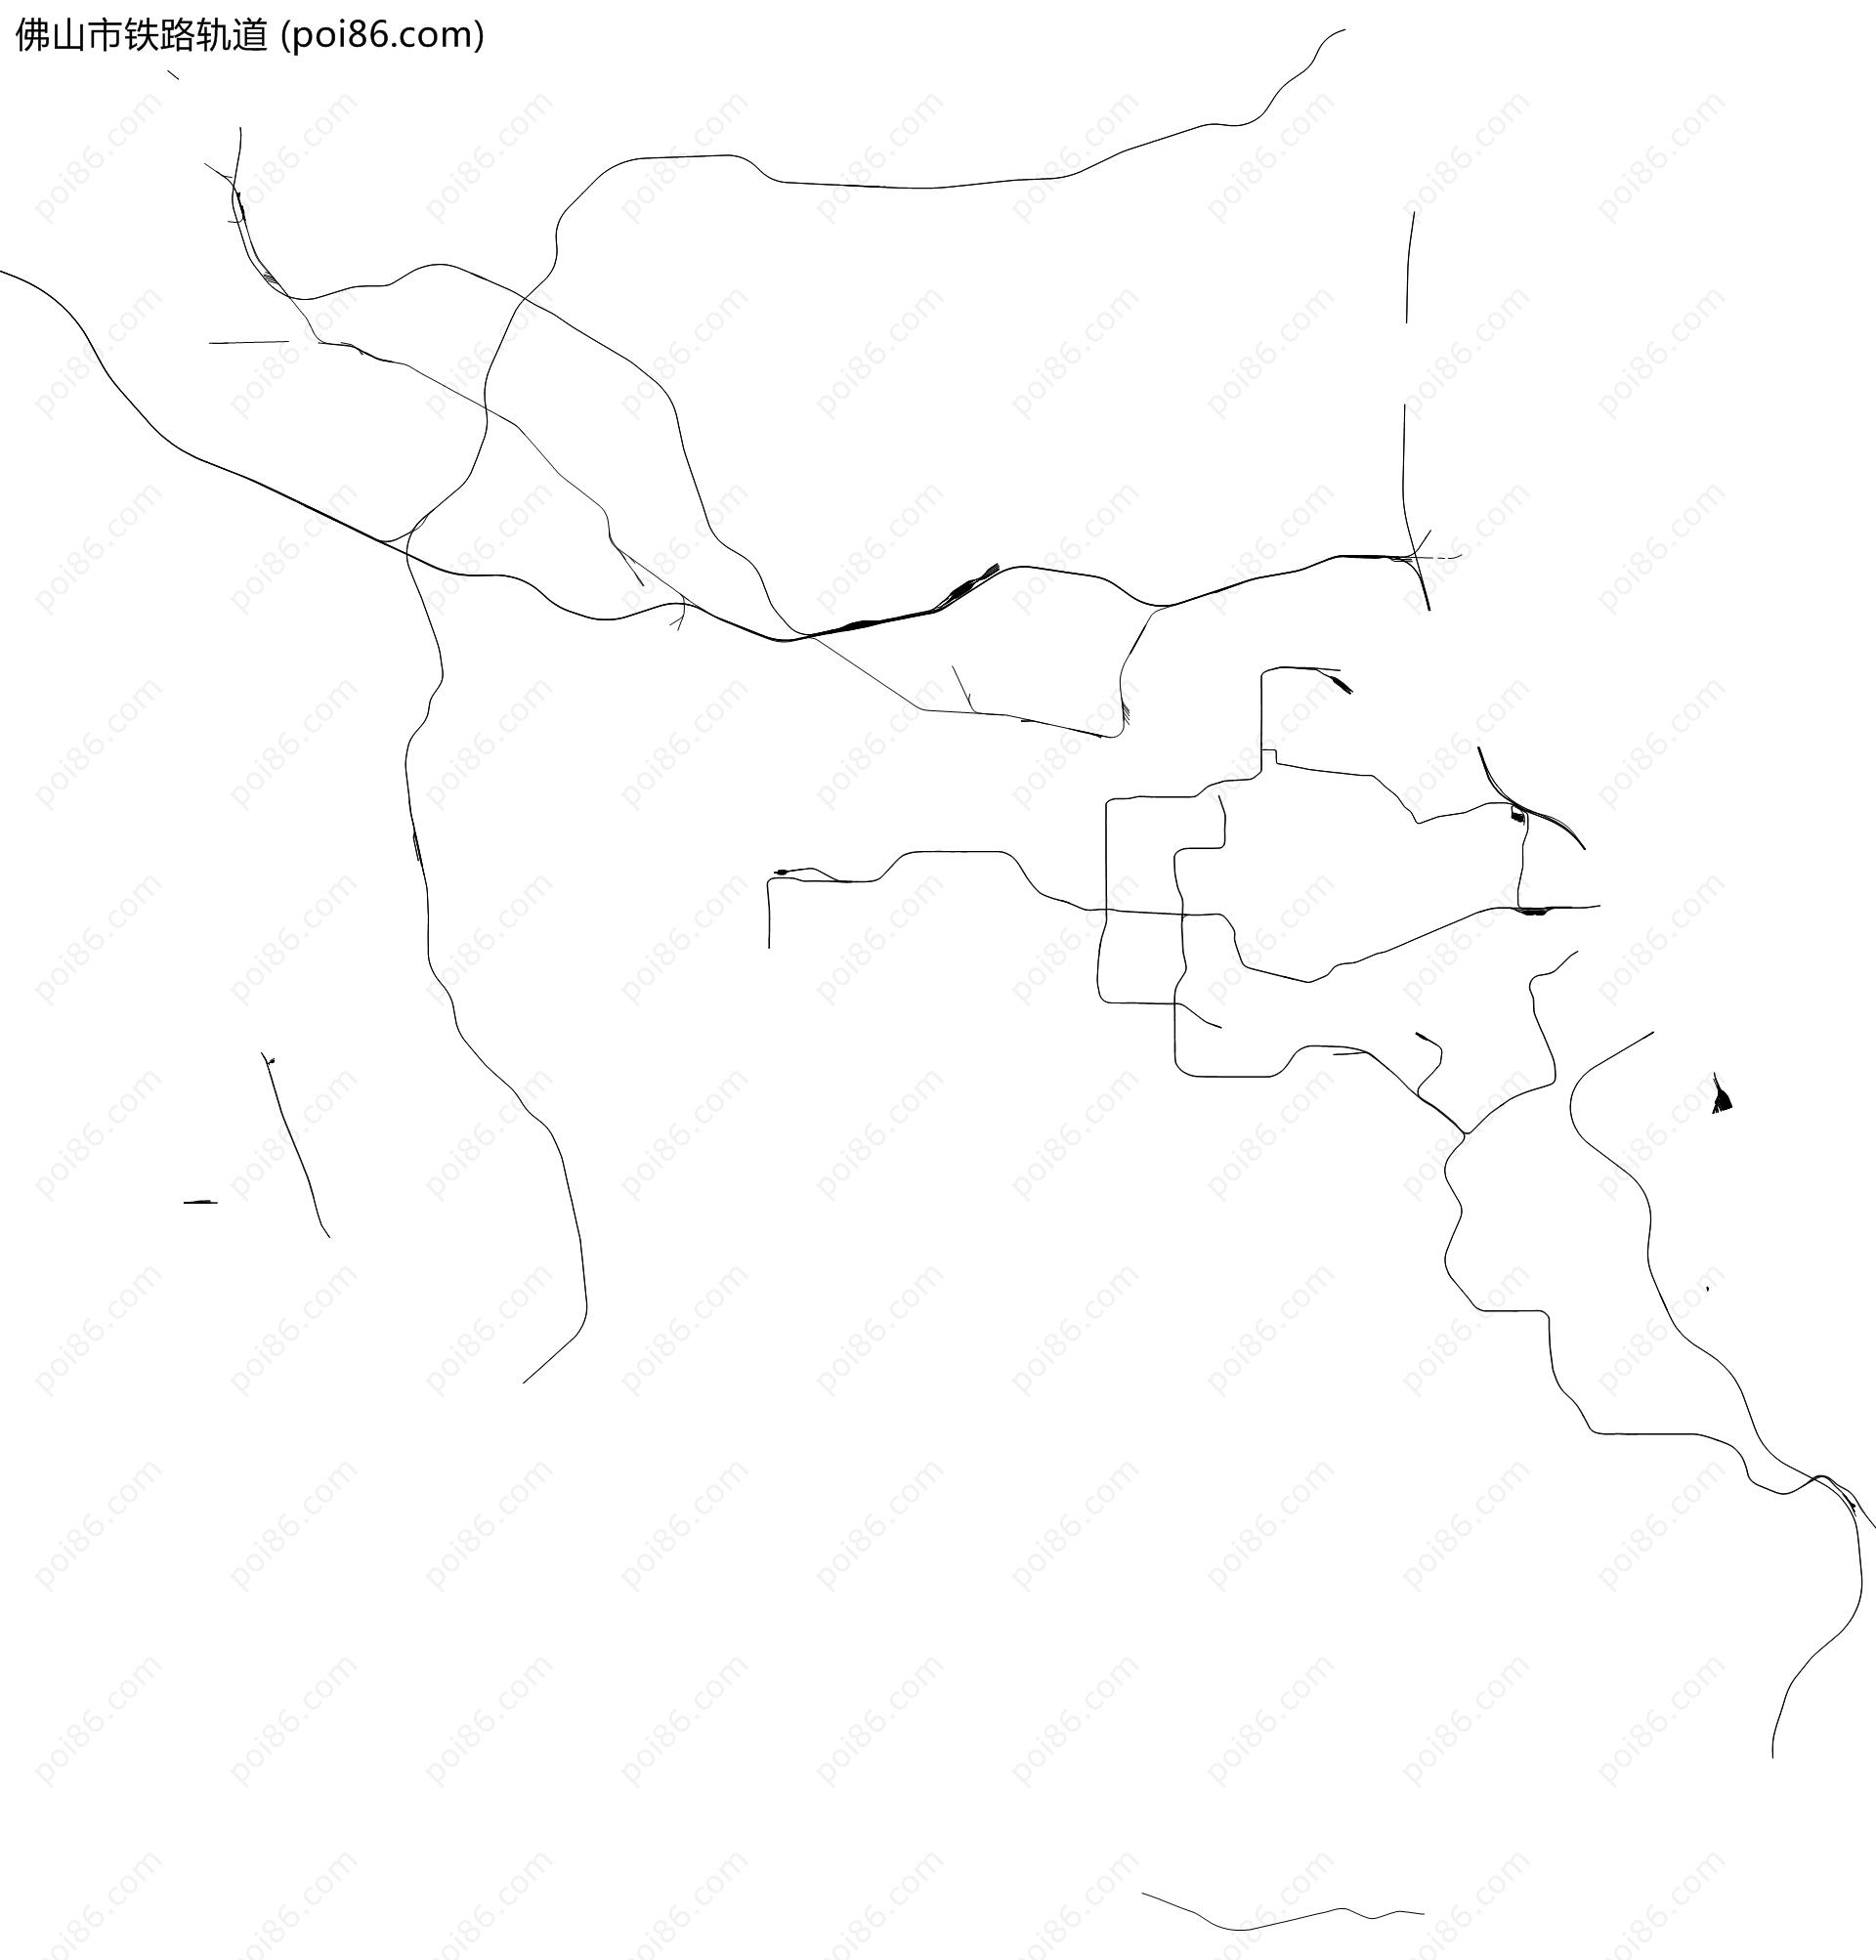 佛山市铁路轨道地图